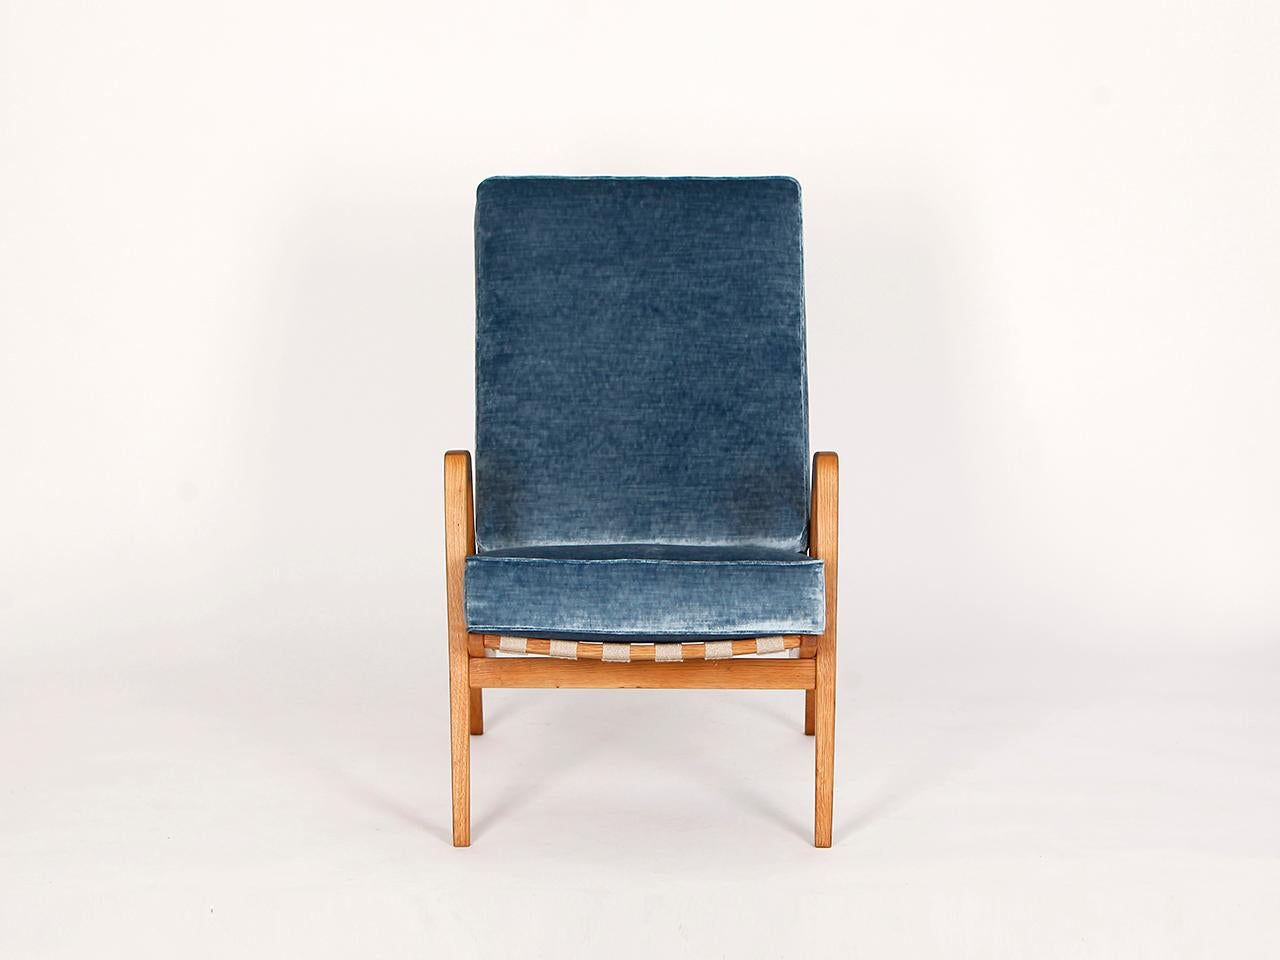 Dieser Sessel wurde in der ehemaligen Tschechoslowakei in den 1950er Jahren hergestellt. Die Hanfriemen wurden erneuert und die Holzteile neu lackiert. Die Kissen haben einen Kern aus Kokosfasern, der mit Schafwolle umwickelt ist. Sehr hochwertige